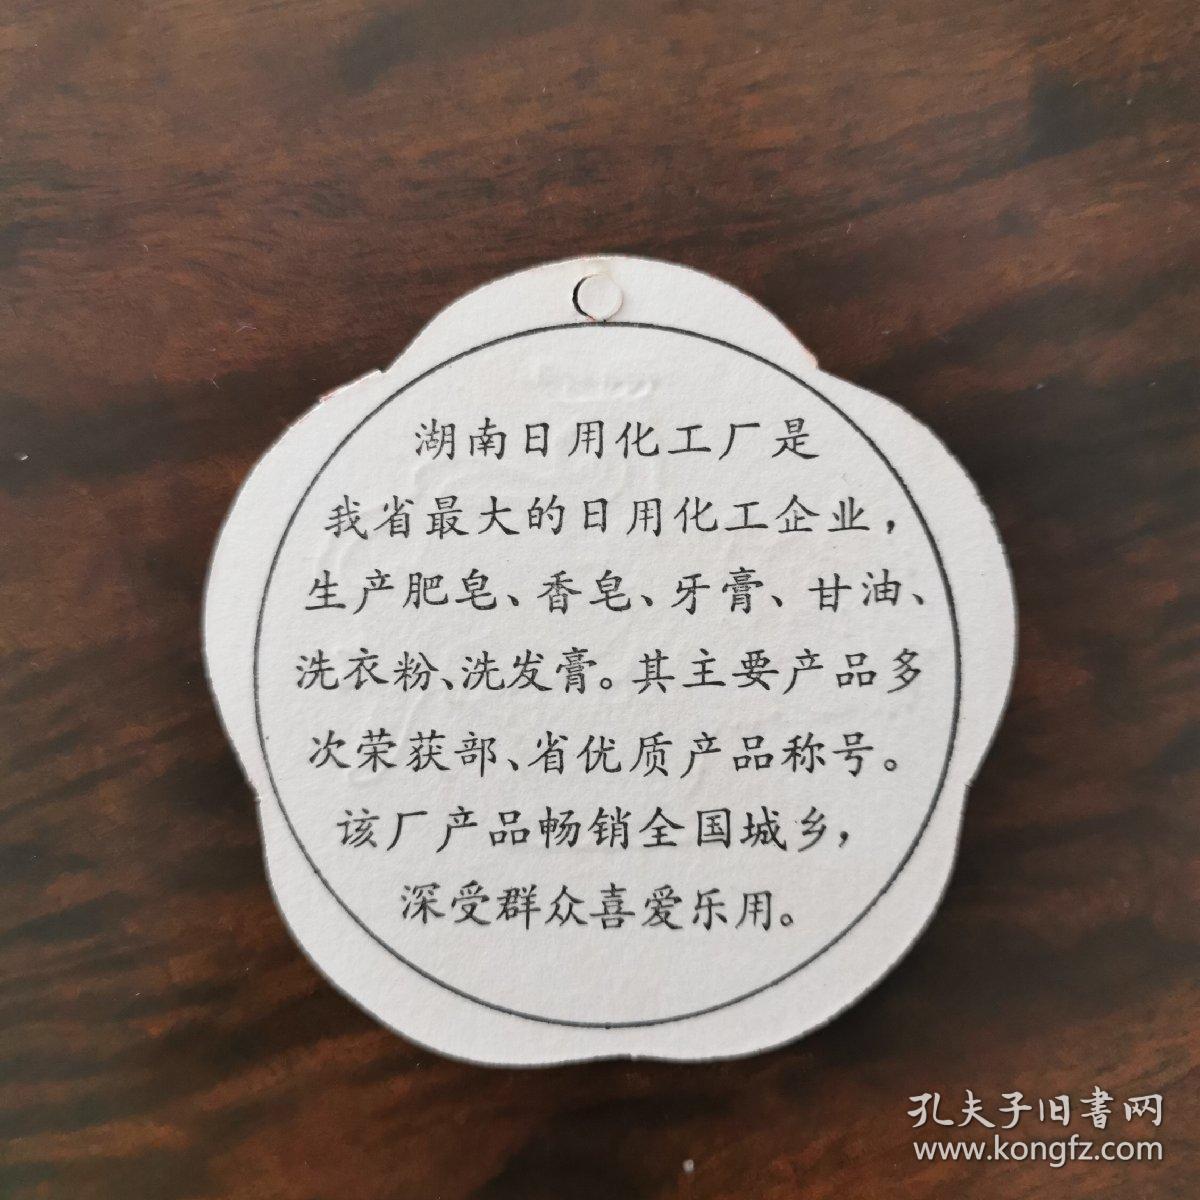 花瓣型书签设计——湖南日用化工厂庆祝国庆35周年